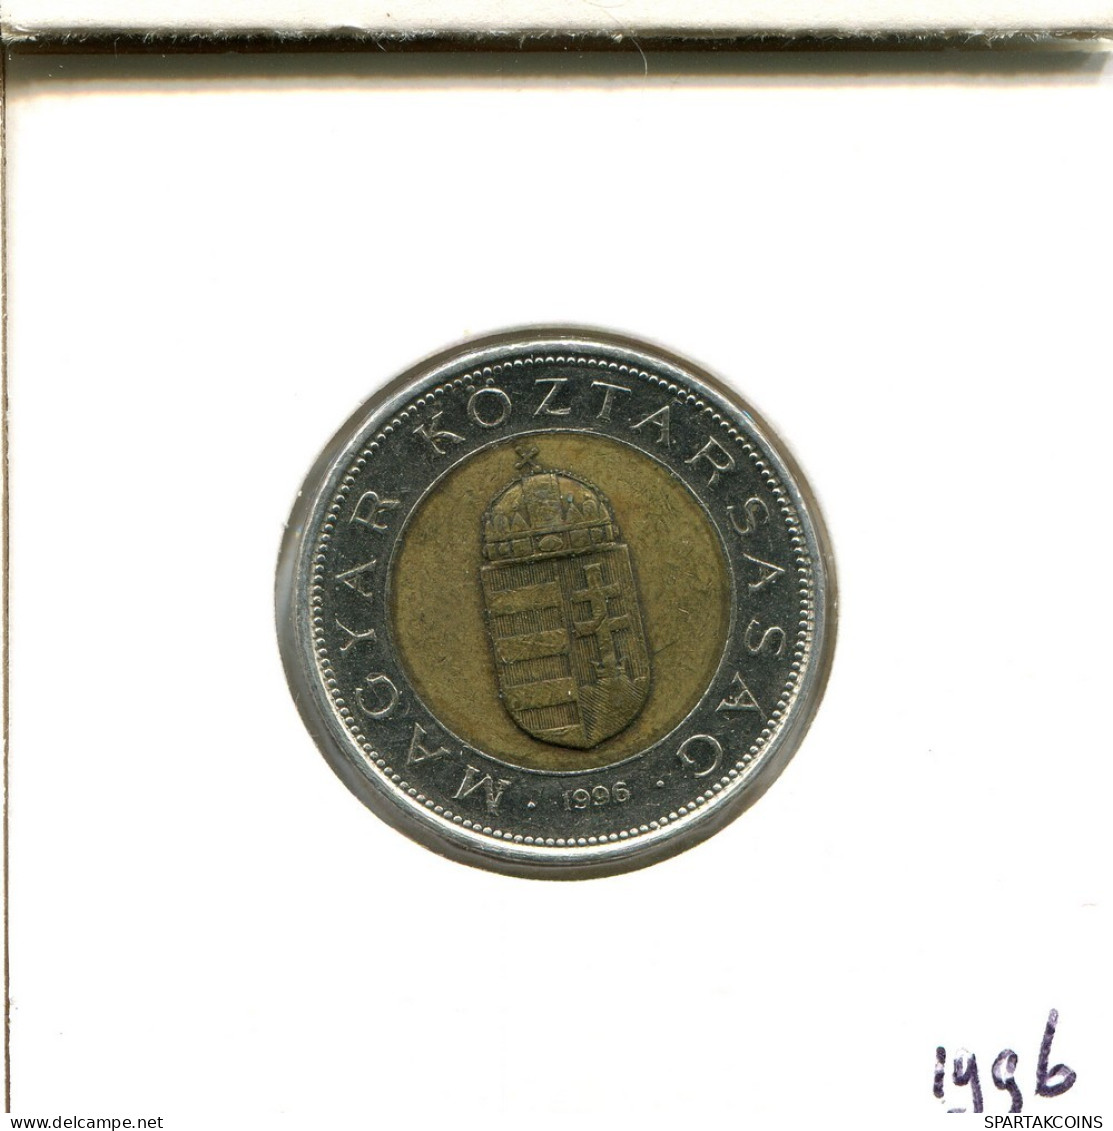 100 FORINT 1996 SIEBENBÜRGEN HUNGARY Münze BIMETALLIC #AS917.D.A - Ungarn